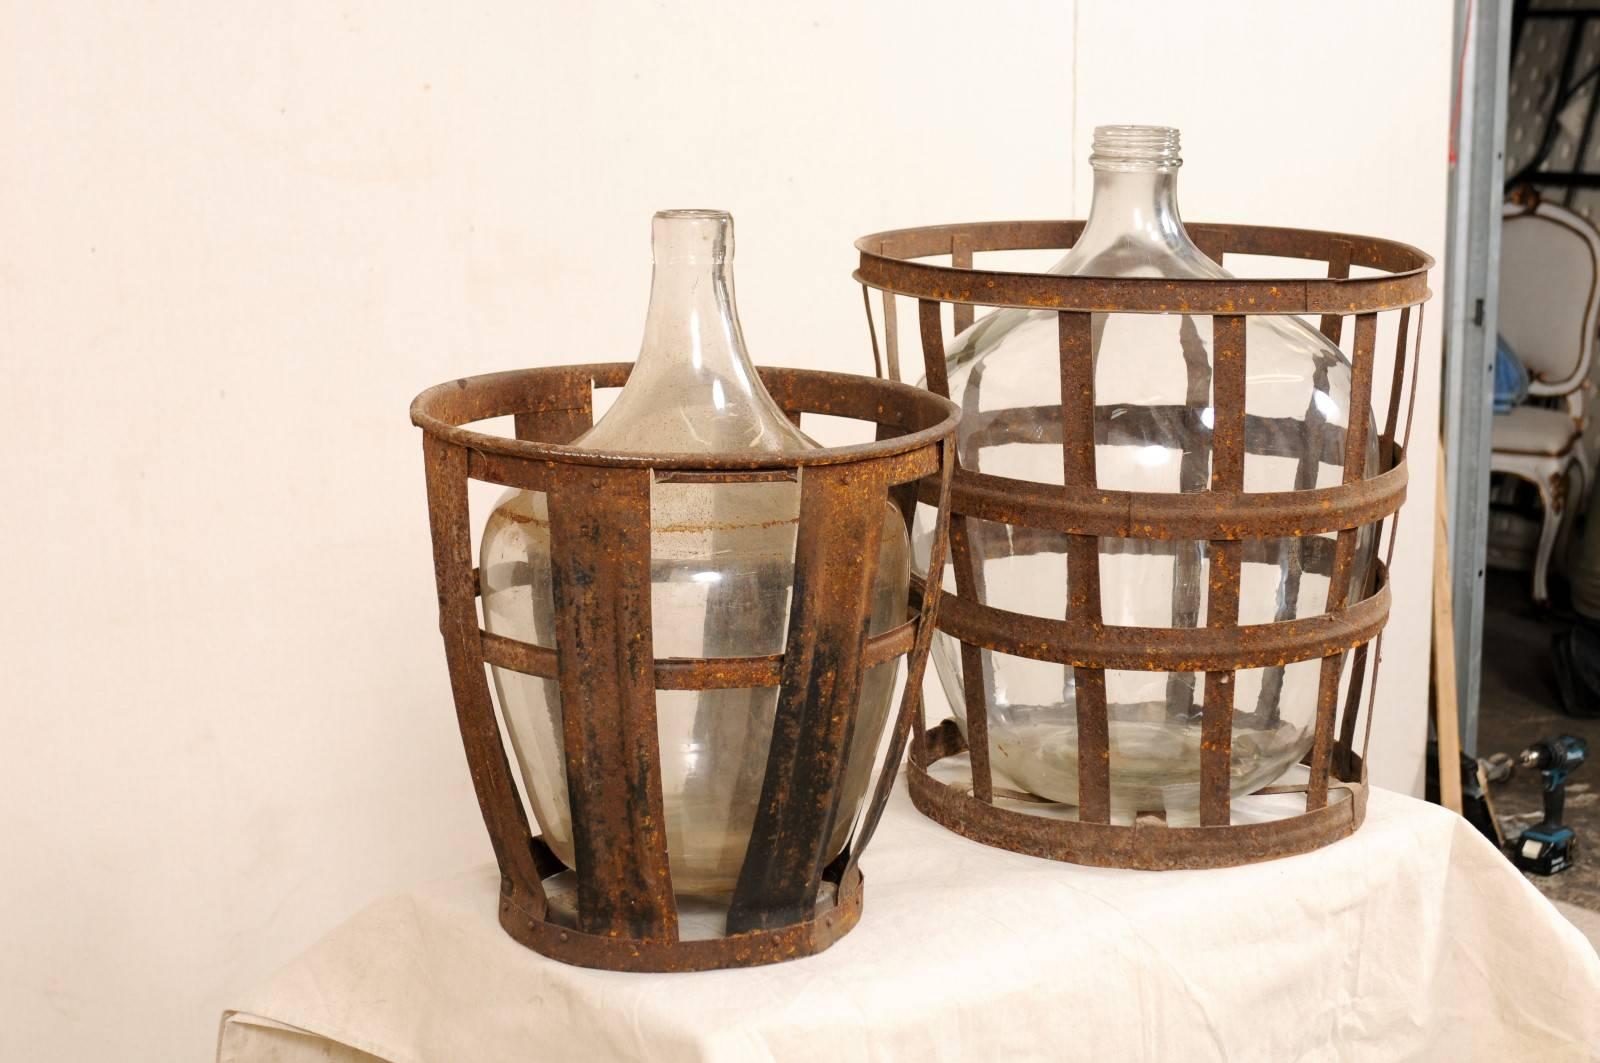 baskets for wine bottles